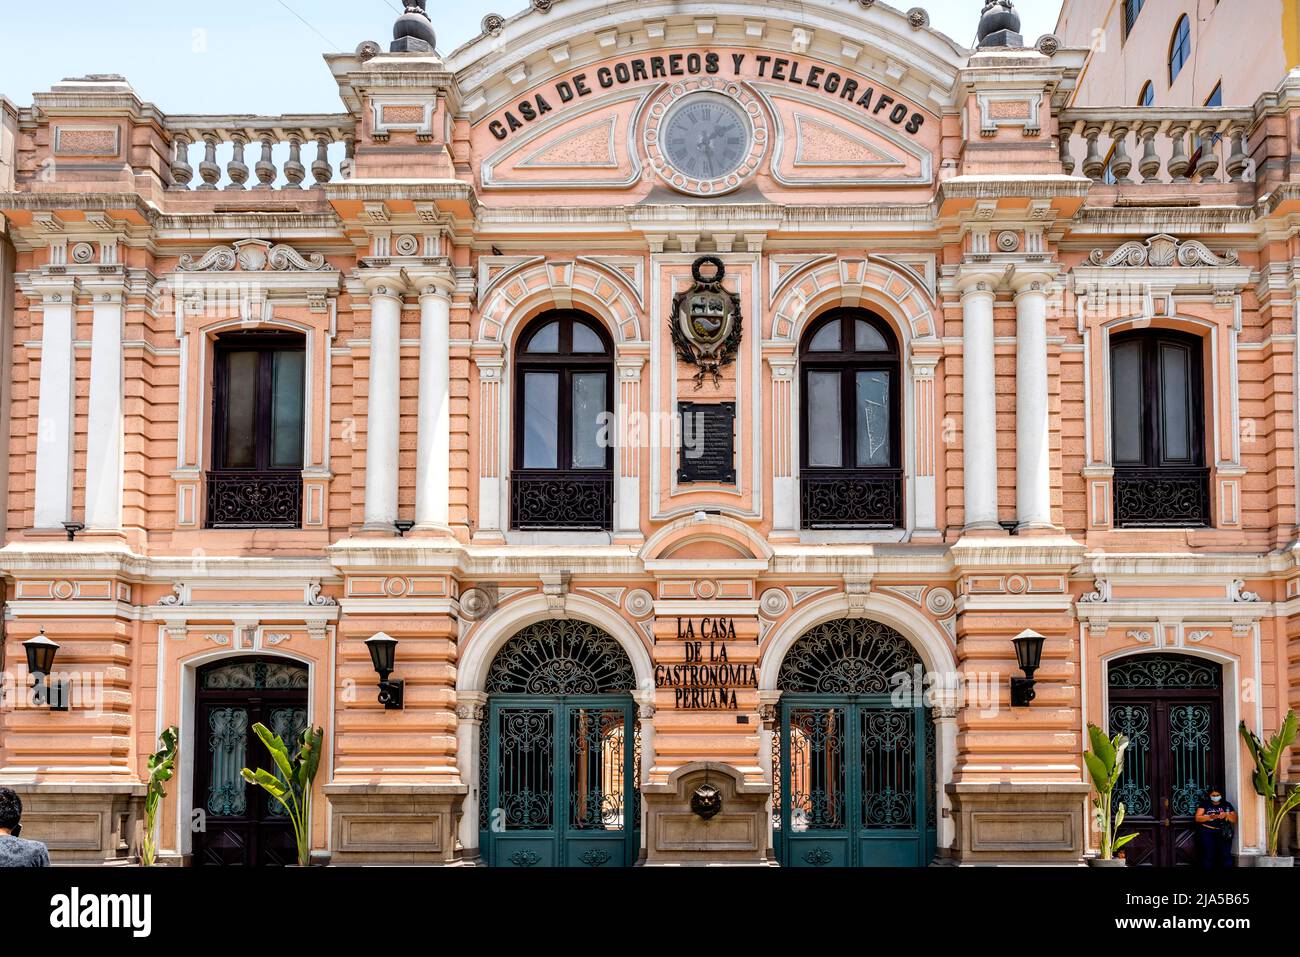 The Casa de Correos y Telegrafos (The Central Post Office) near Plaza De Armas, Lima, Peru. Stock Photo